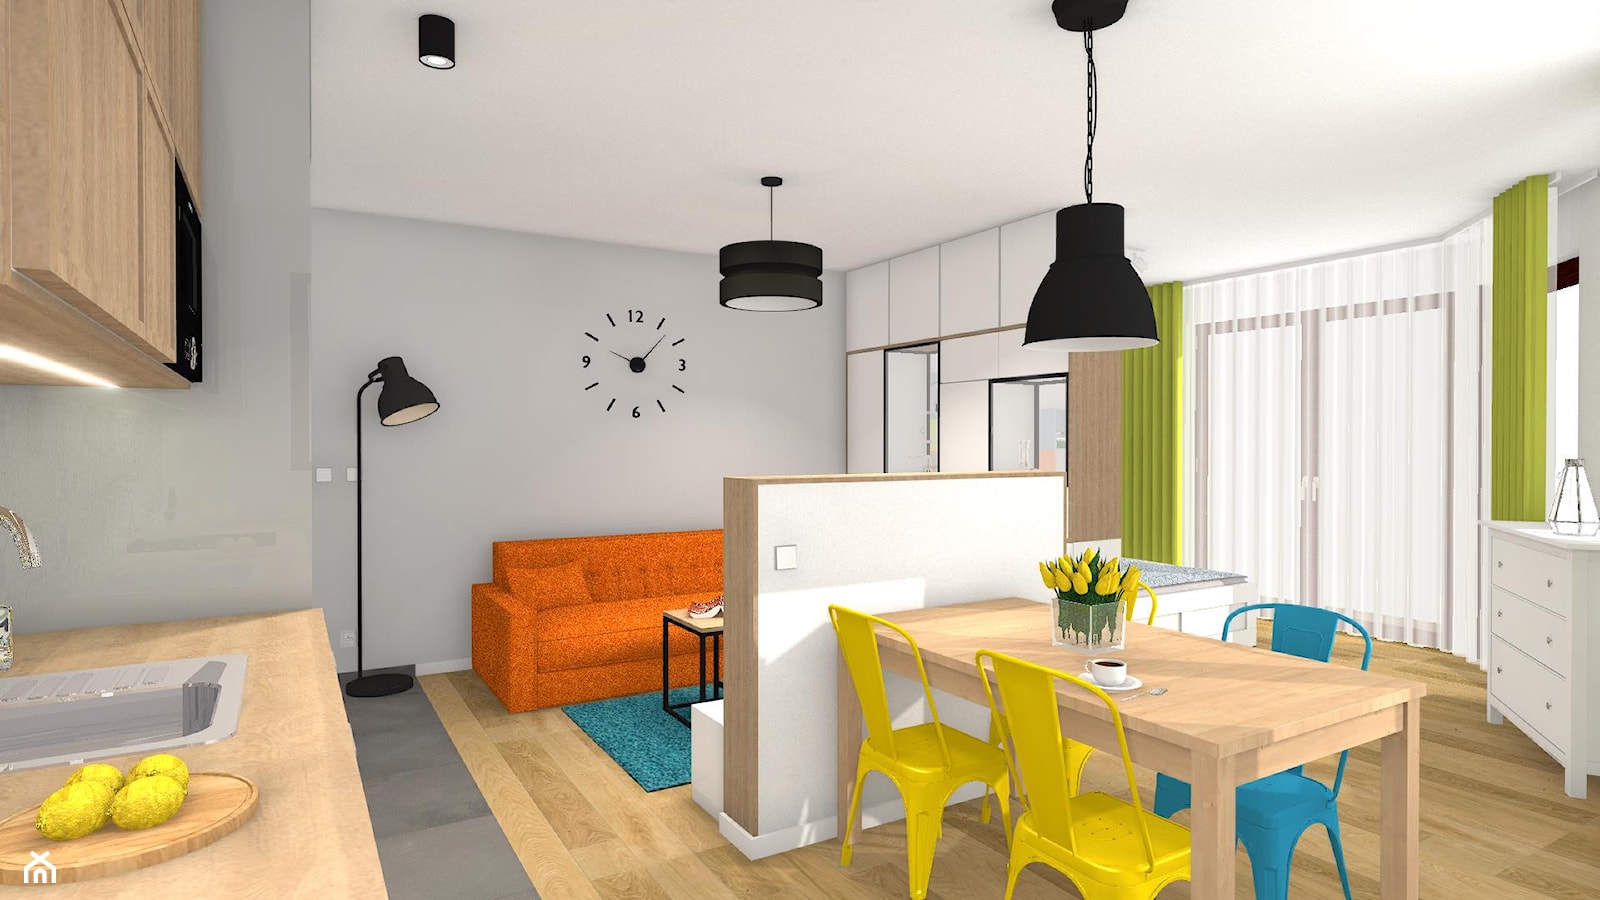 Kolor z elementami loftowymi - Średnia szara jadalnia w salonie w kuchni, styl nowoczesny - zdjęcie od Justyna Lewicka Design - Homebook